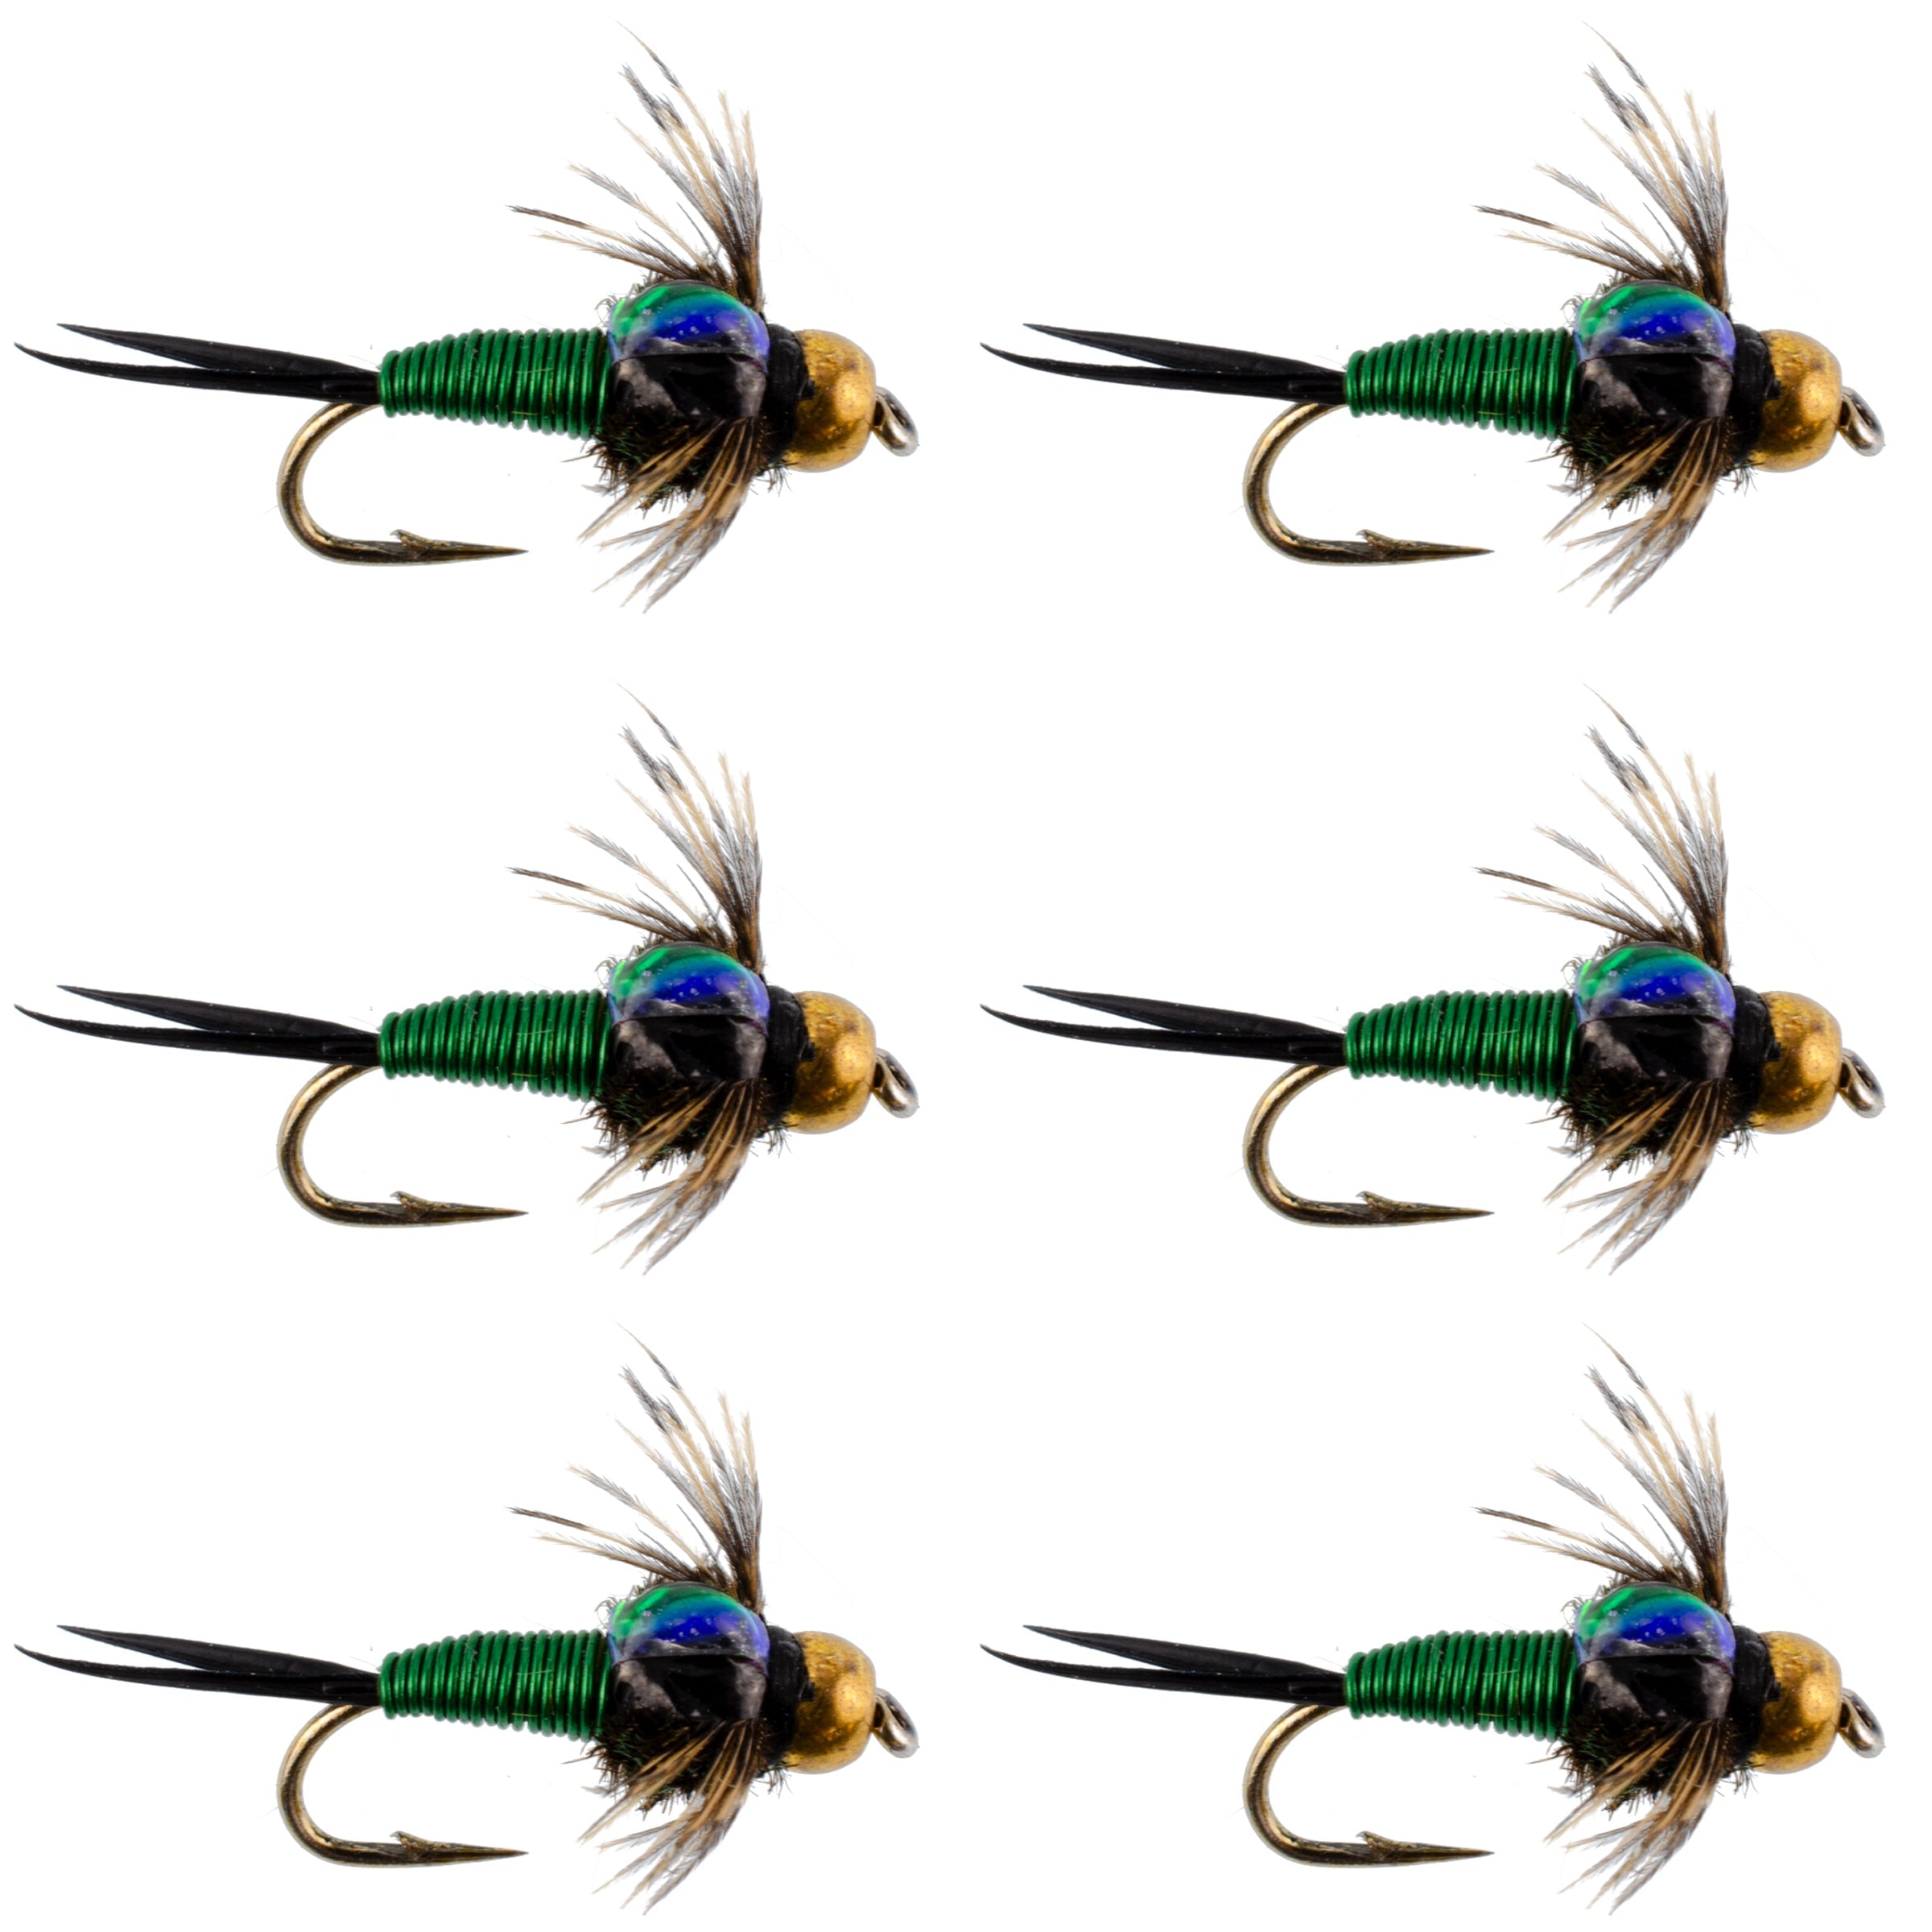 Bead Head Green Copper John Nymph Fly Fishing Flies - Set of 6 Flies Hook Size 16